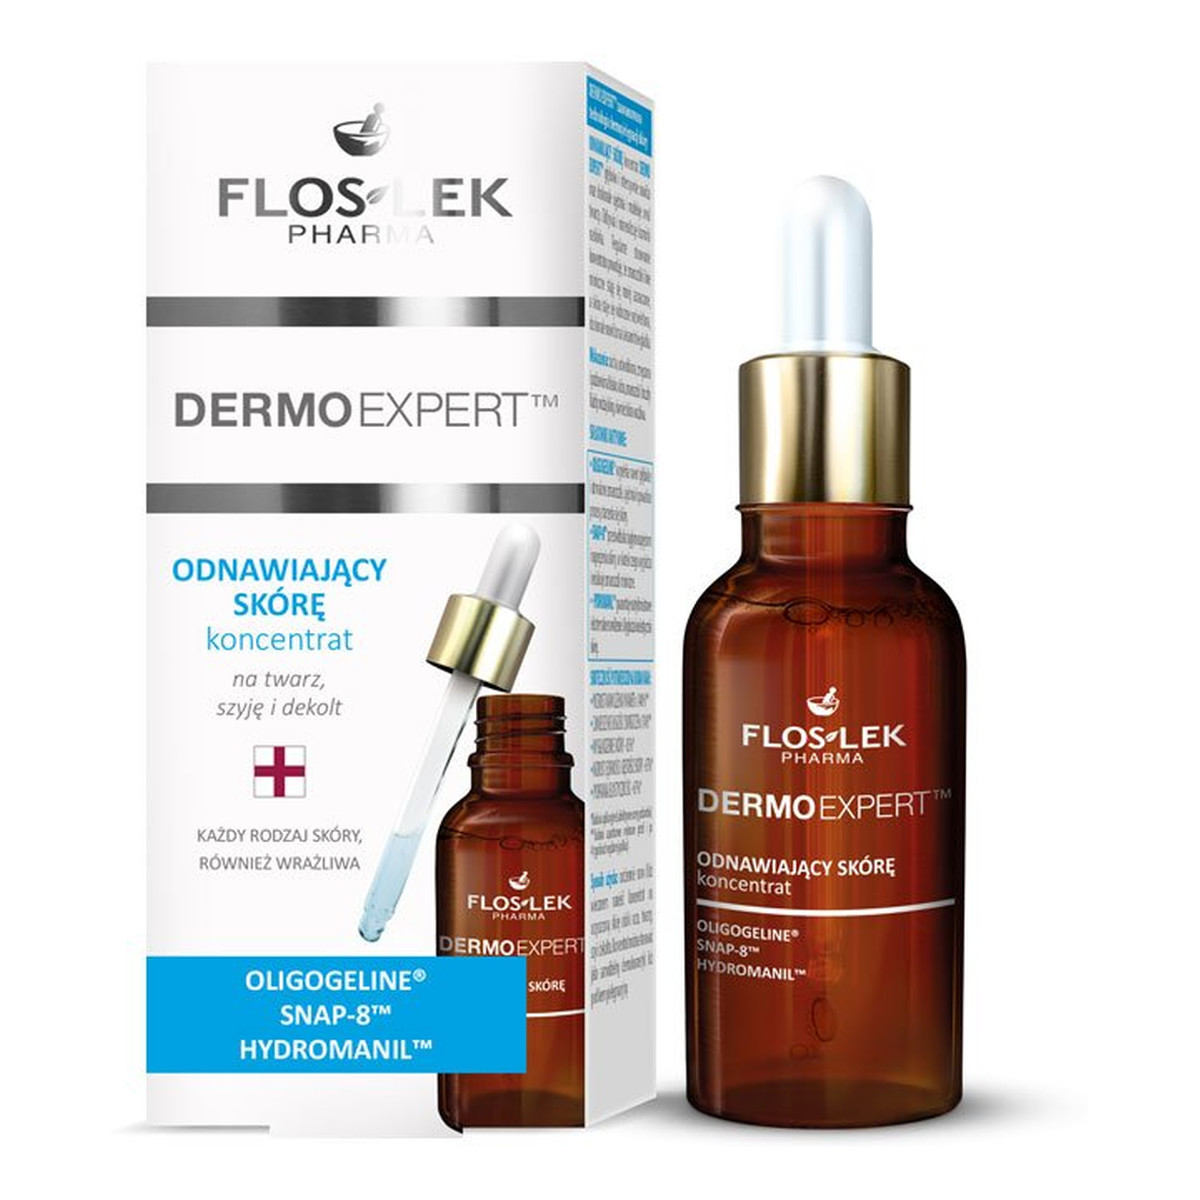 FlosLek Pharma Dermo Expert Koncentrat Odnawiający Skórę Na Twarz, Szyję i Dekolt 30ml